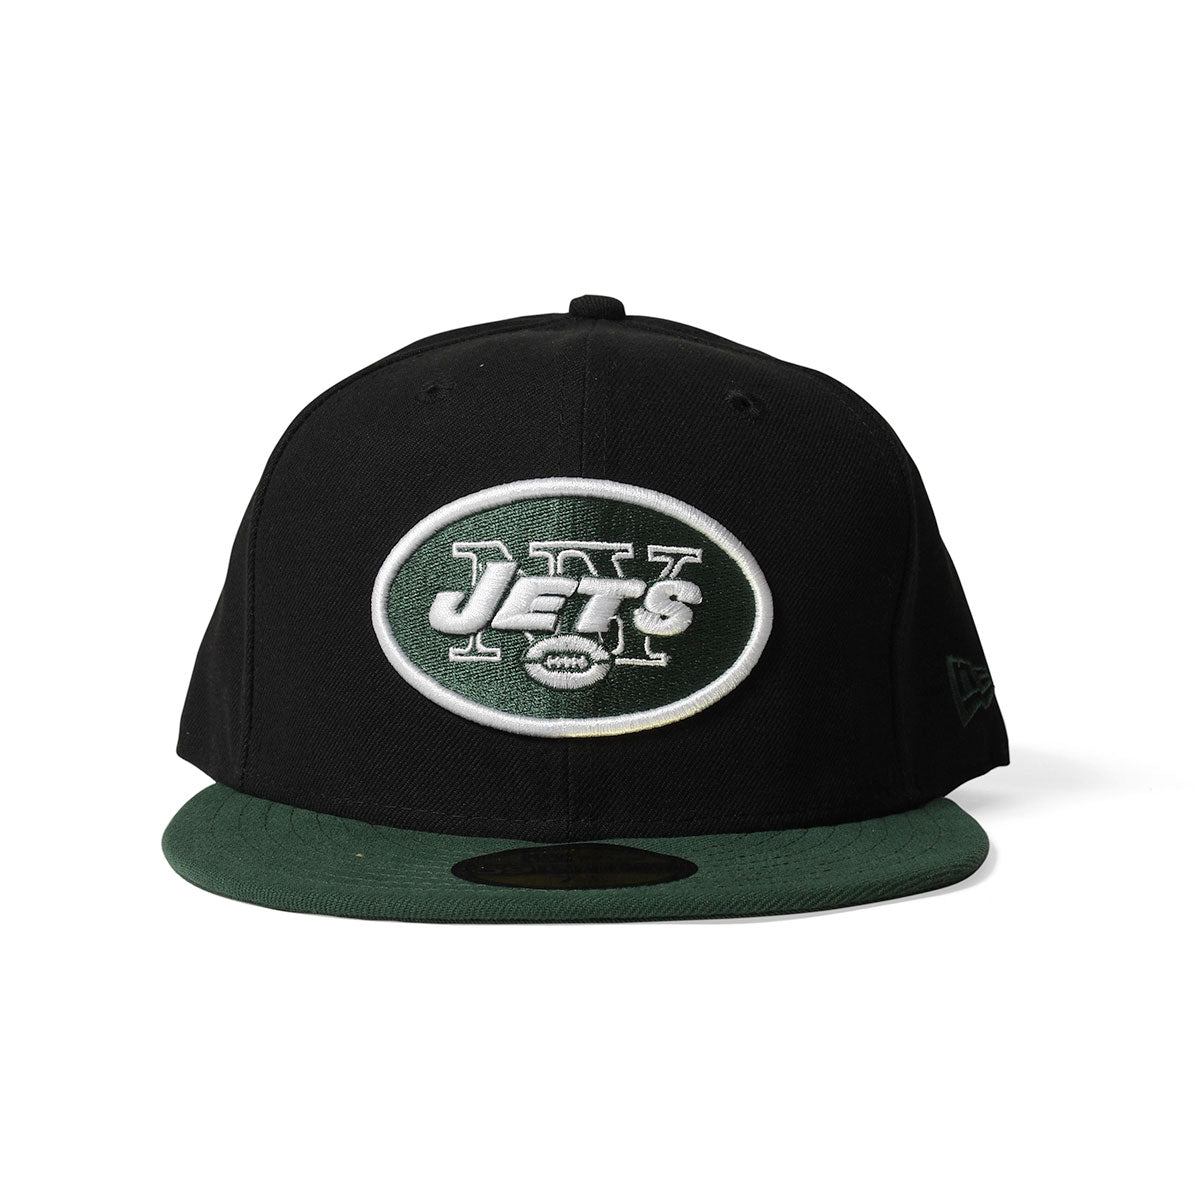 NEW ERA New York Jets - 59FIFTY NFL BLACK/TEAM NY JETS TEAM [10628624]